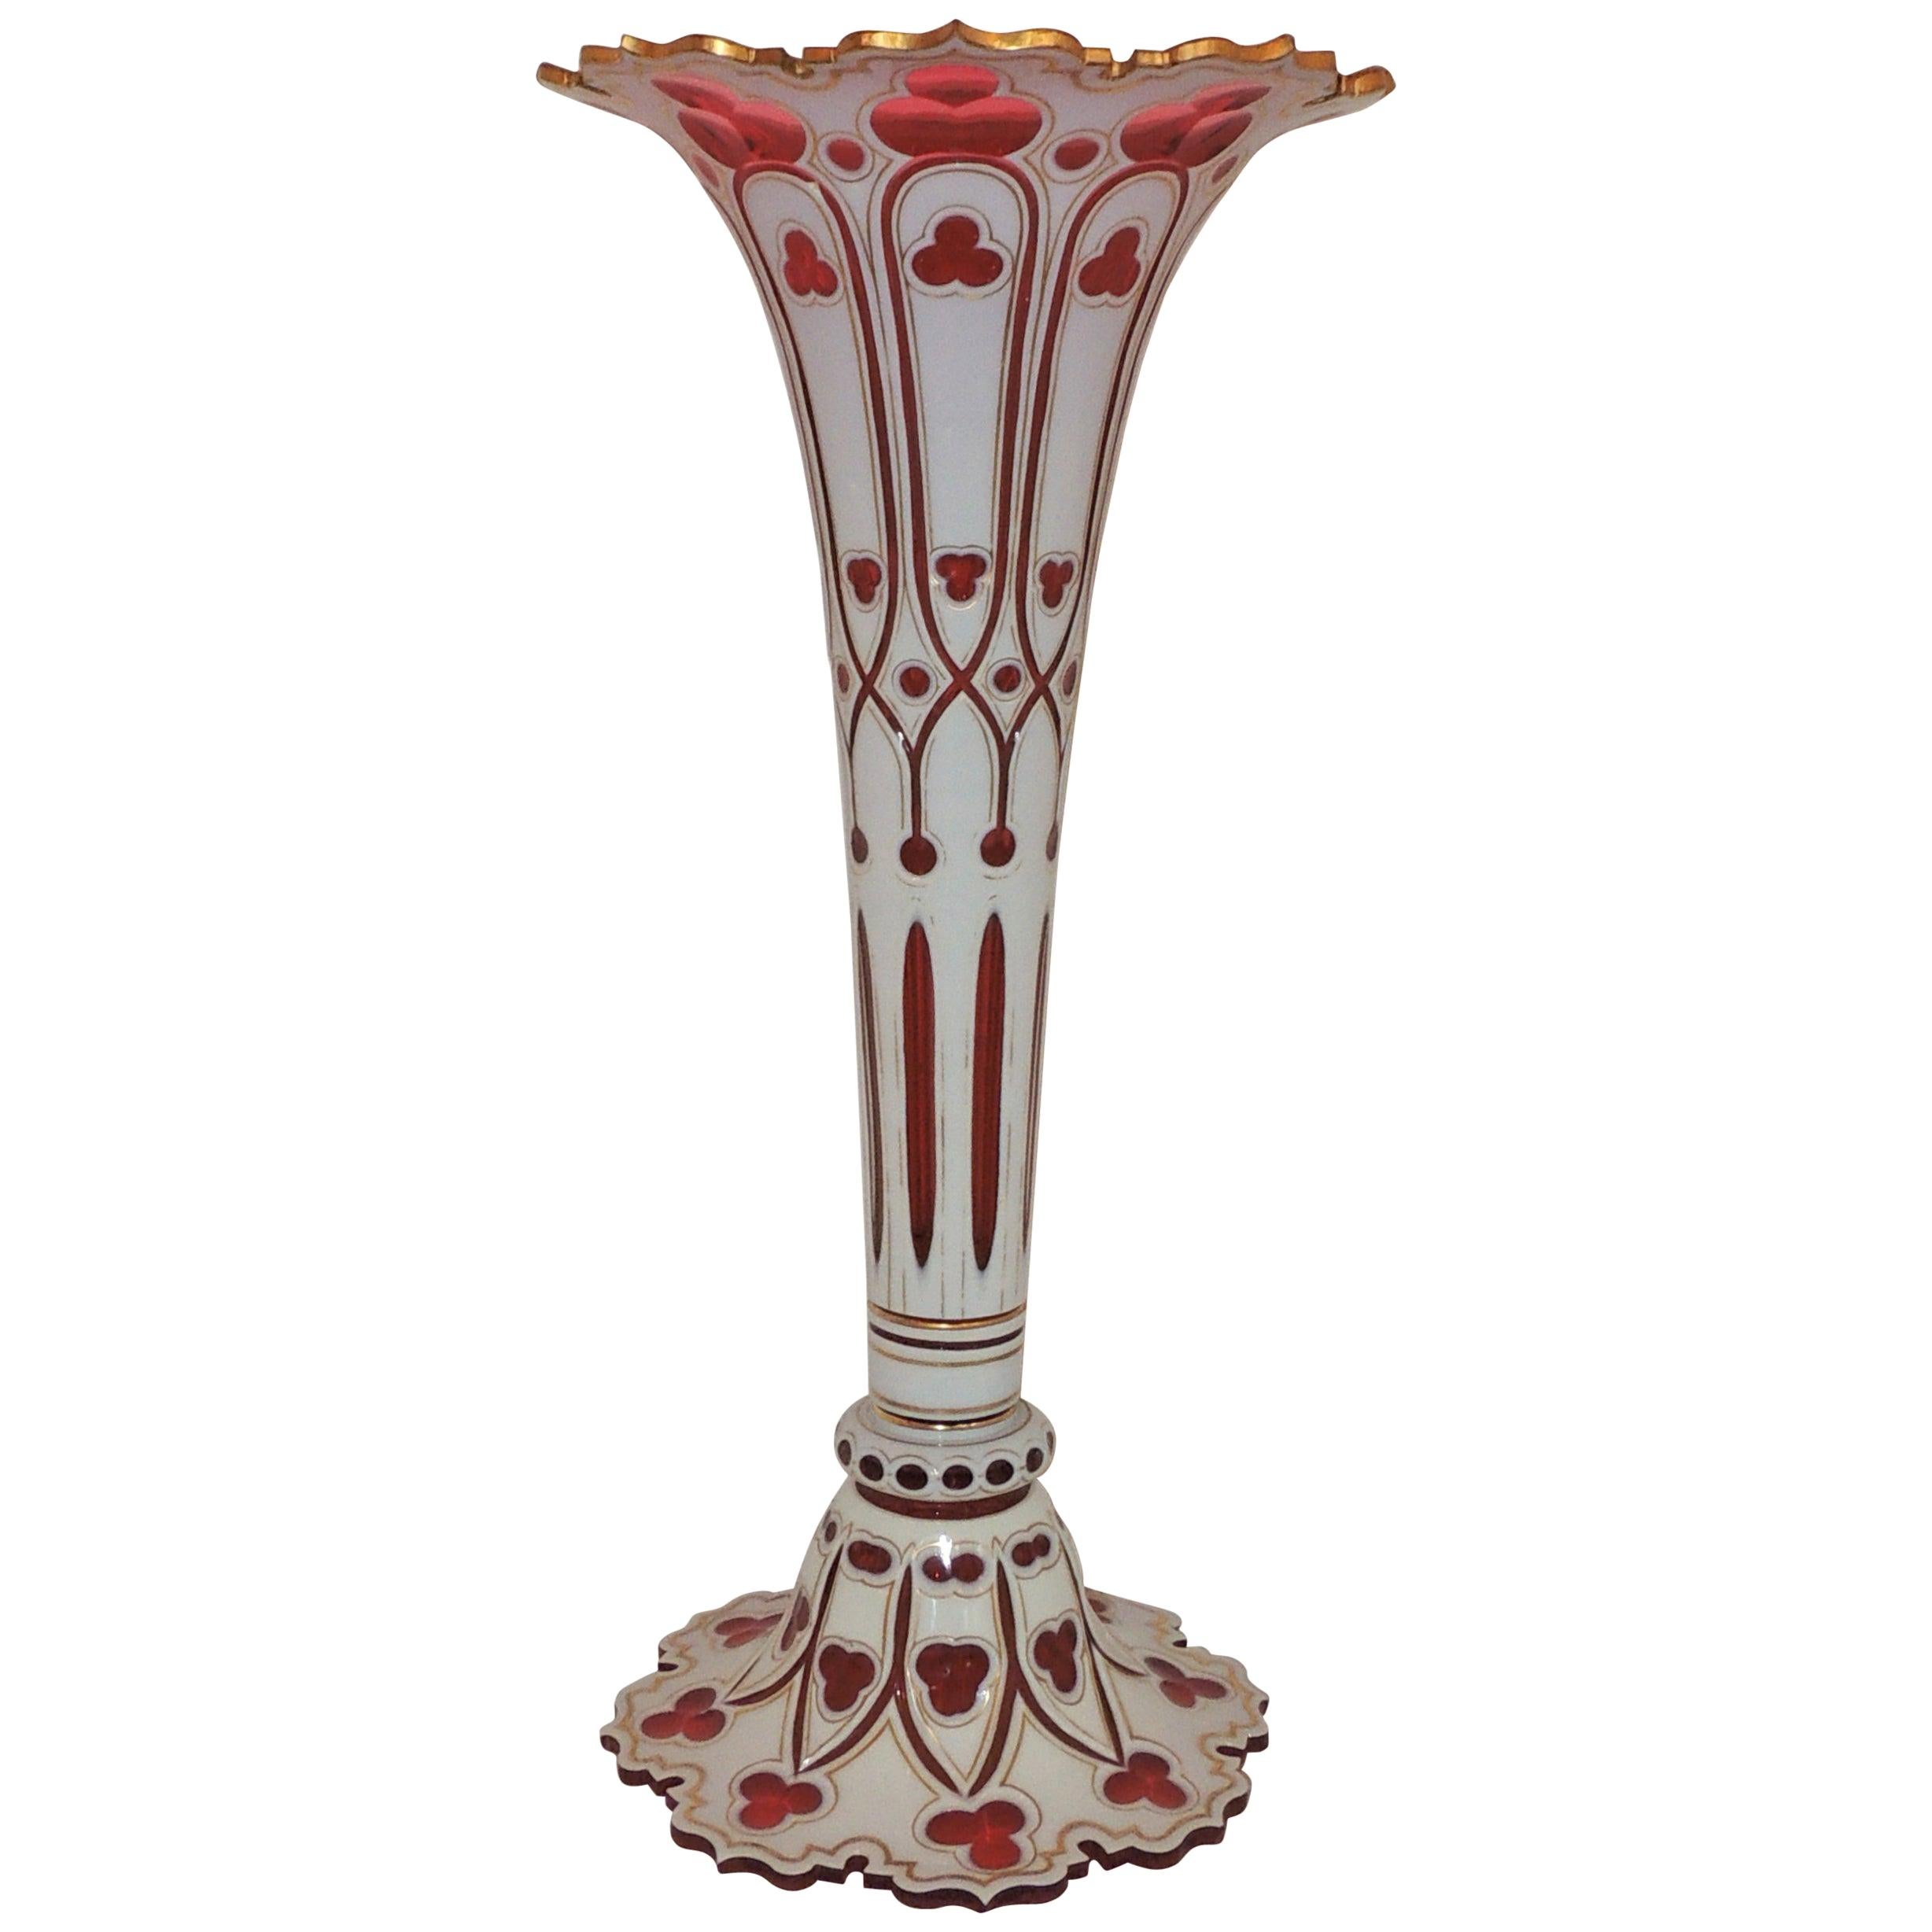 Merveilleux grand vase bohème en verre de cristal blanc et rouge doré en forme de trèfle doré